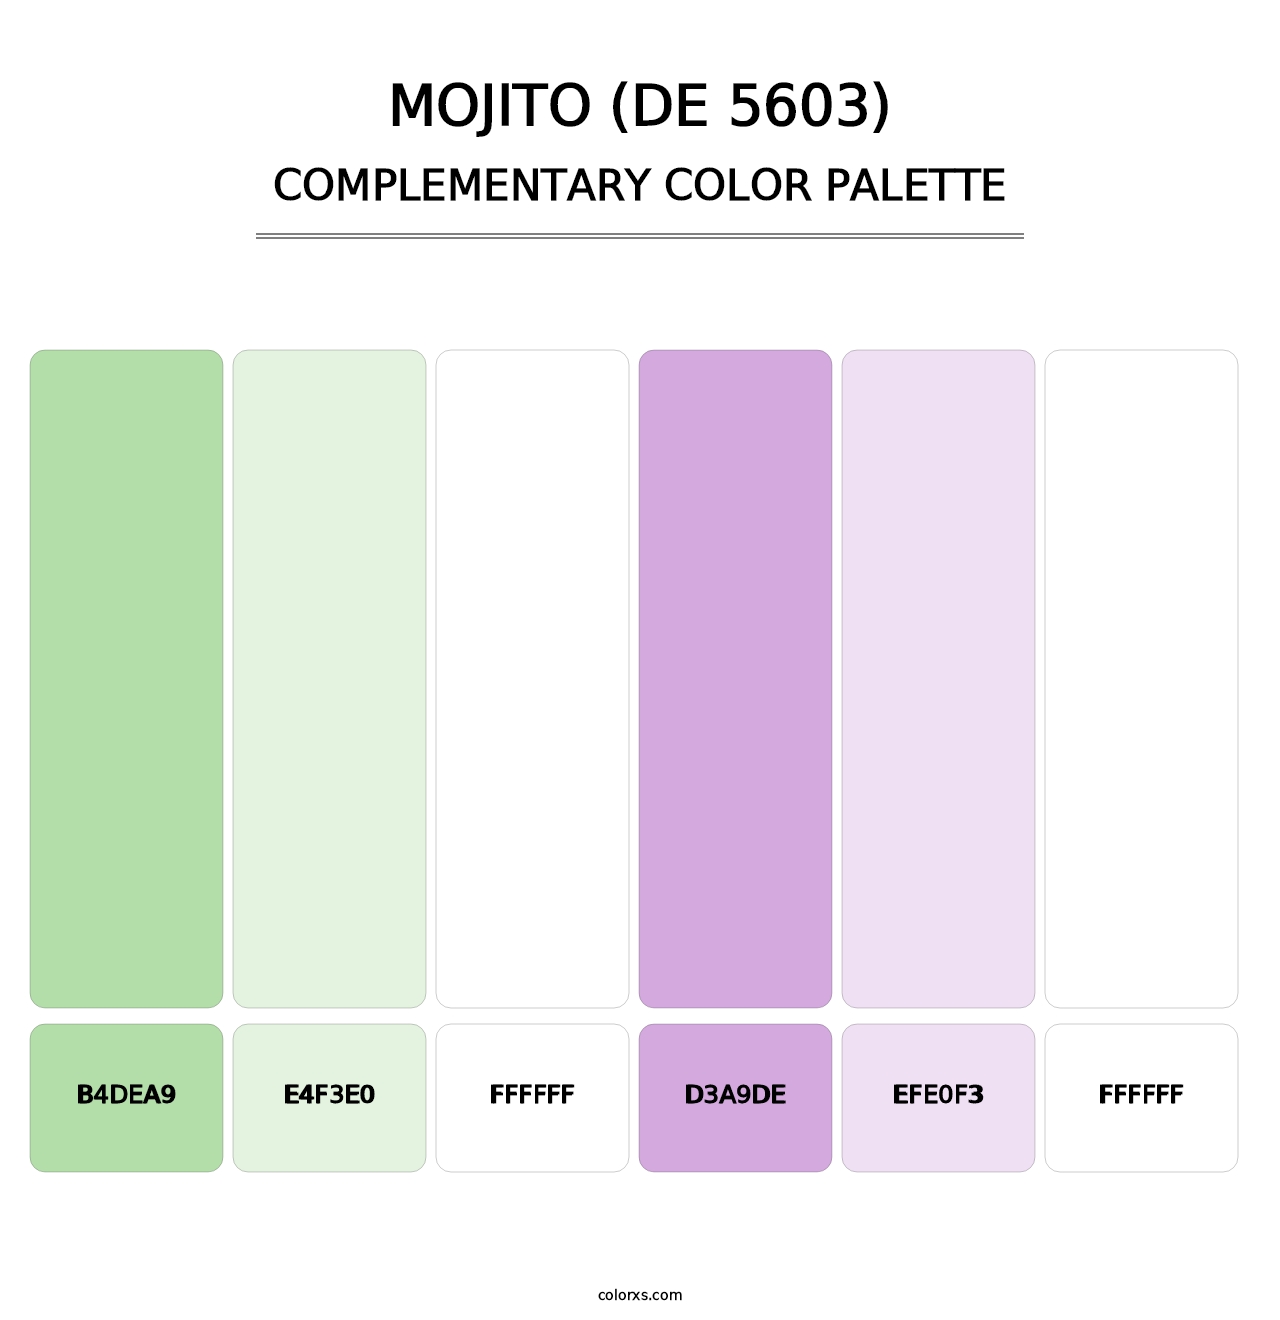 Mojito (DE 5603) - Complementary Color Palette